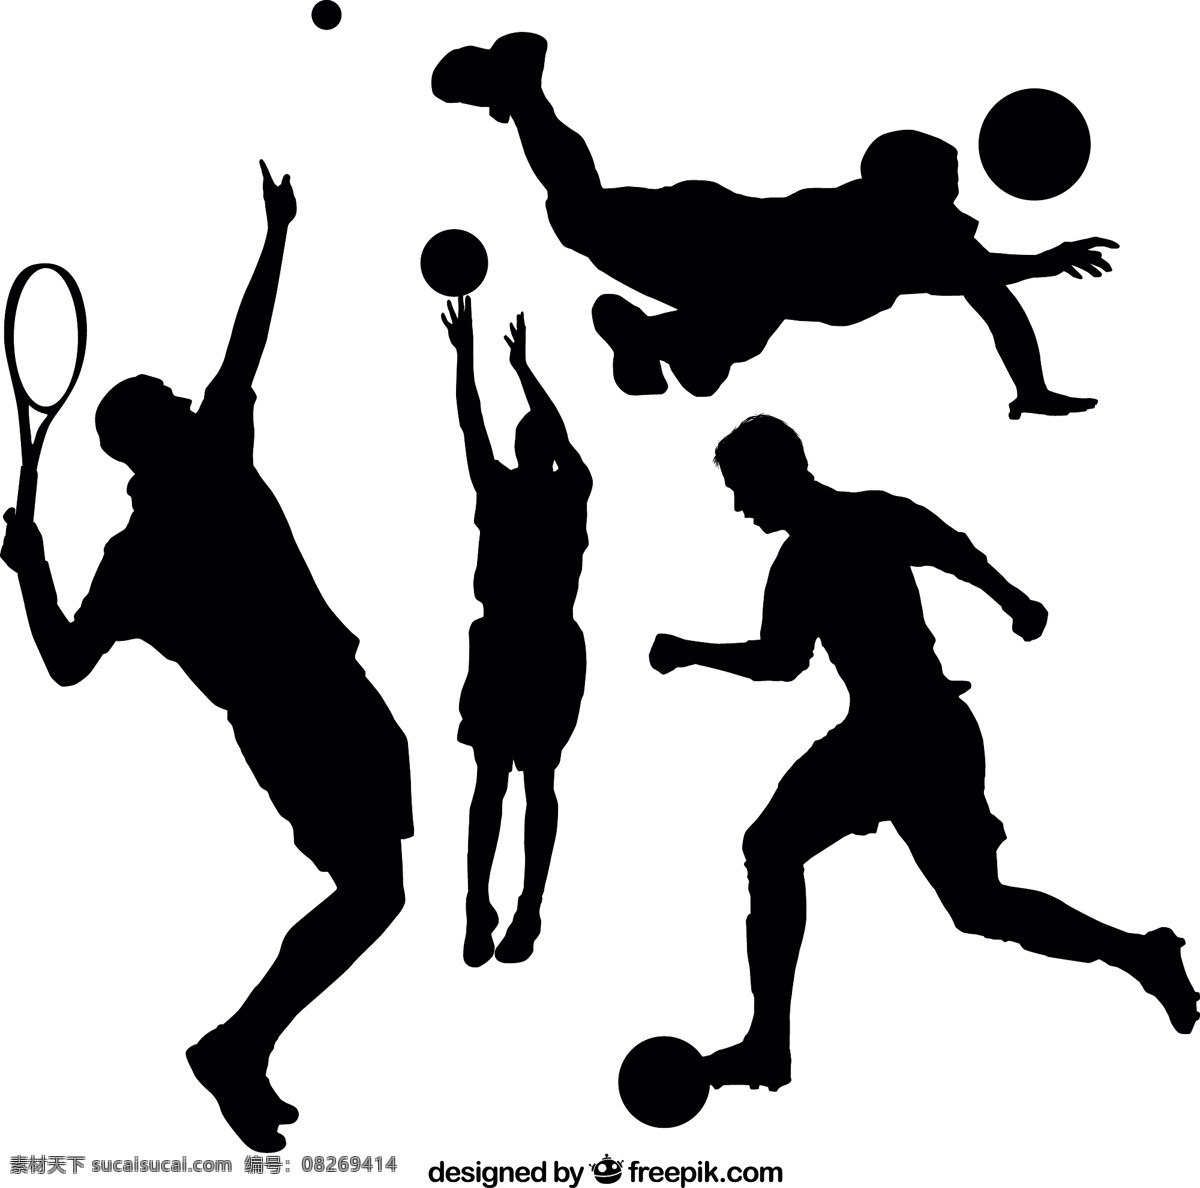 运动剪影 人民 体育 健身 足球 健康 篮球 剪影 人 网球 运动 训练 身体 生活方式 运动员 锻炼 健康的收藏